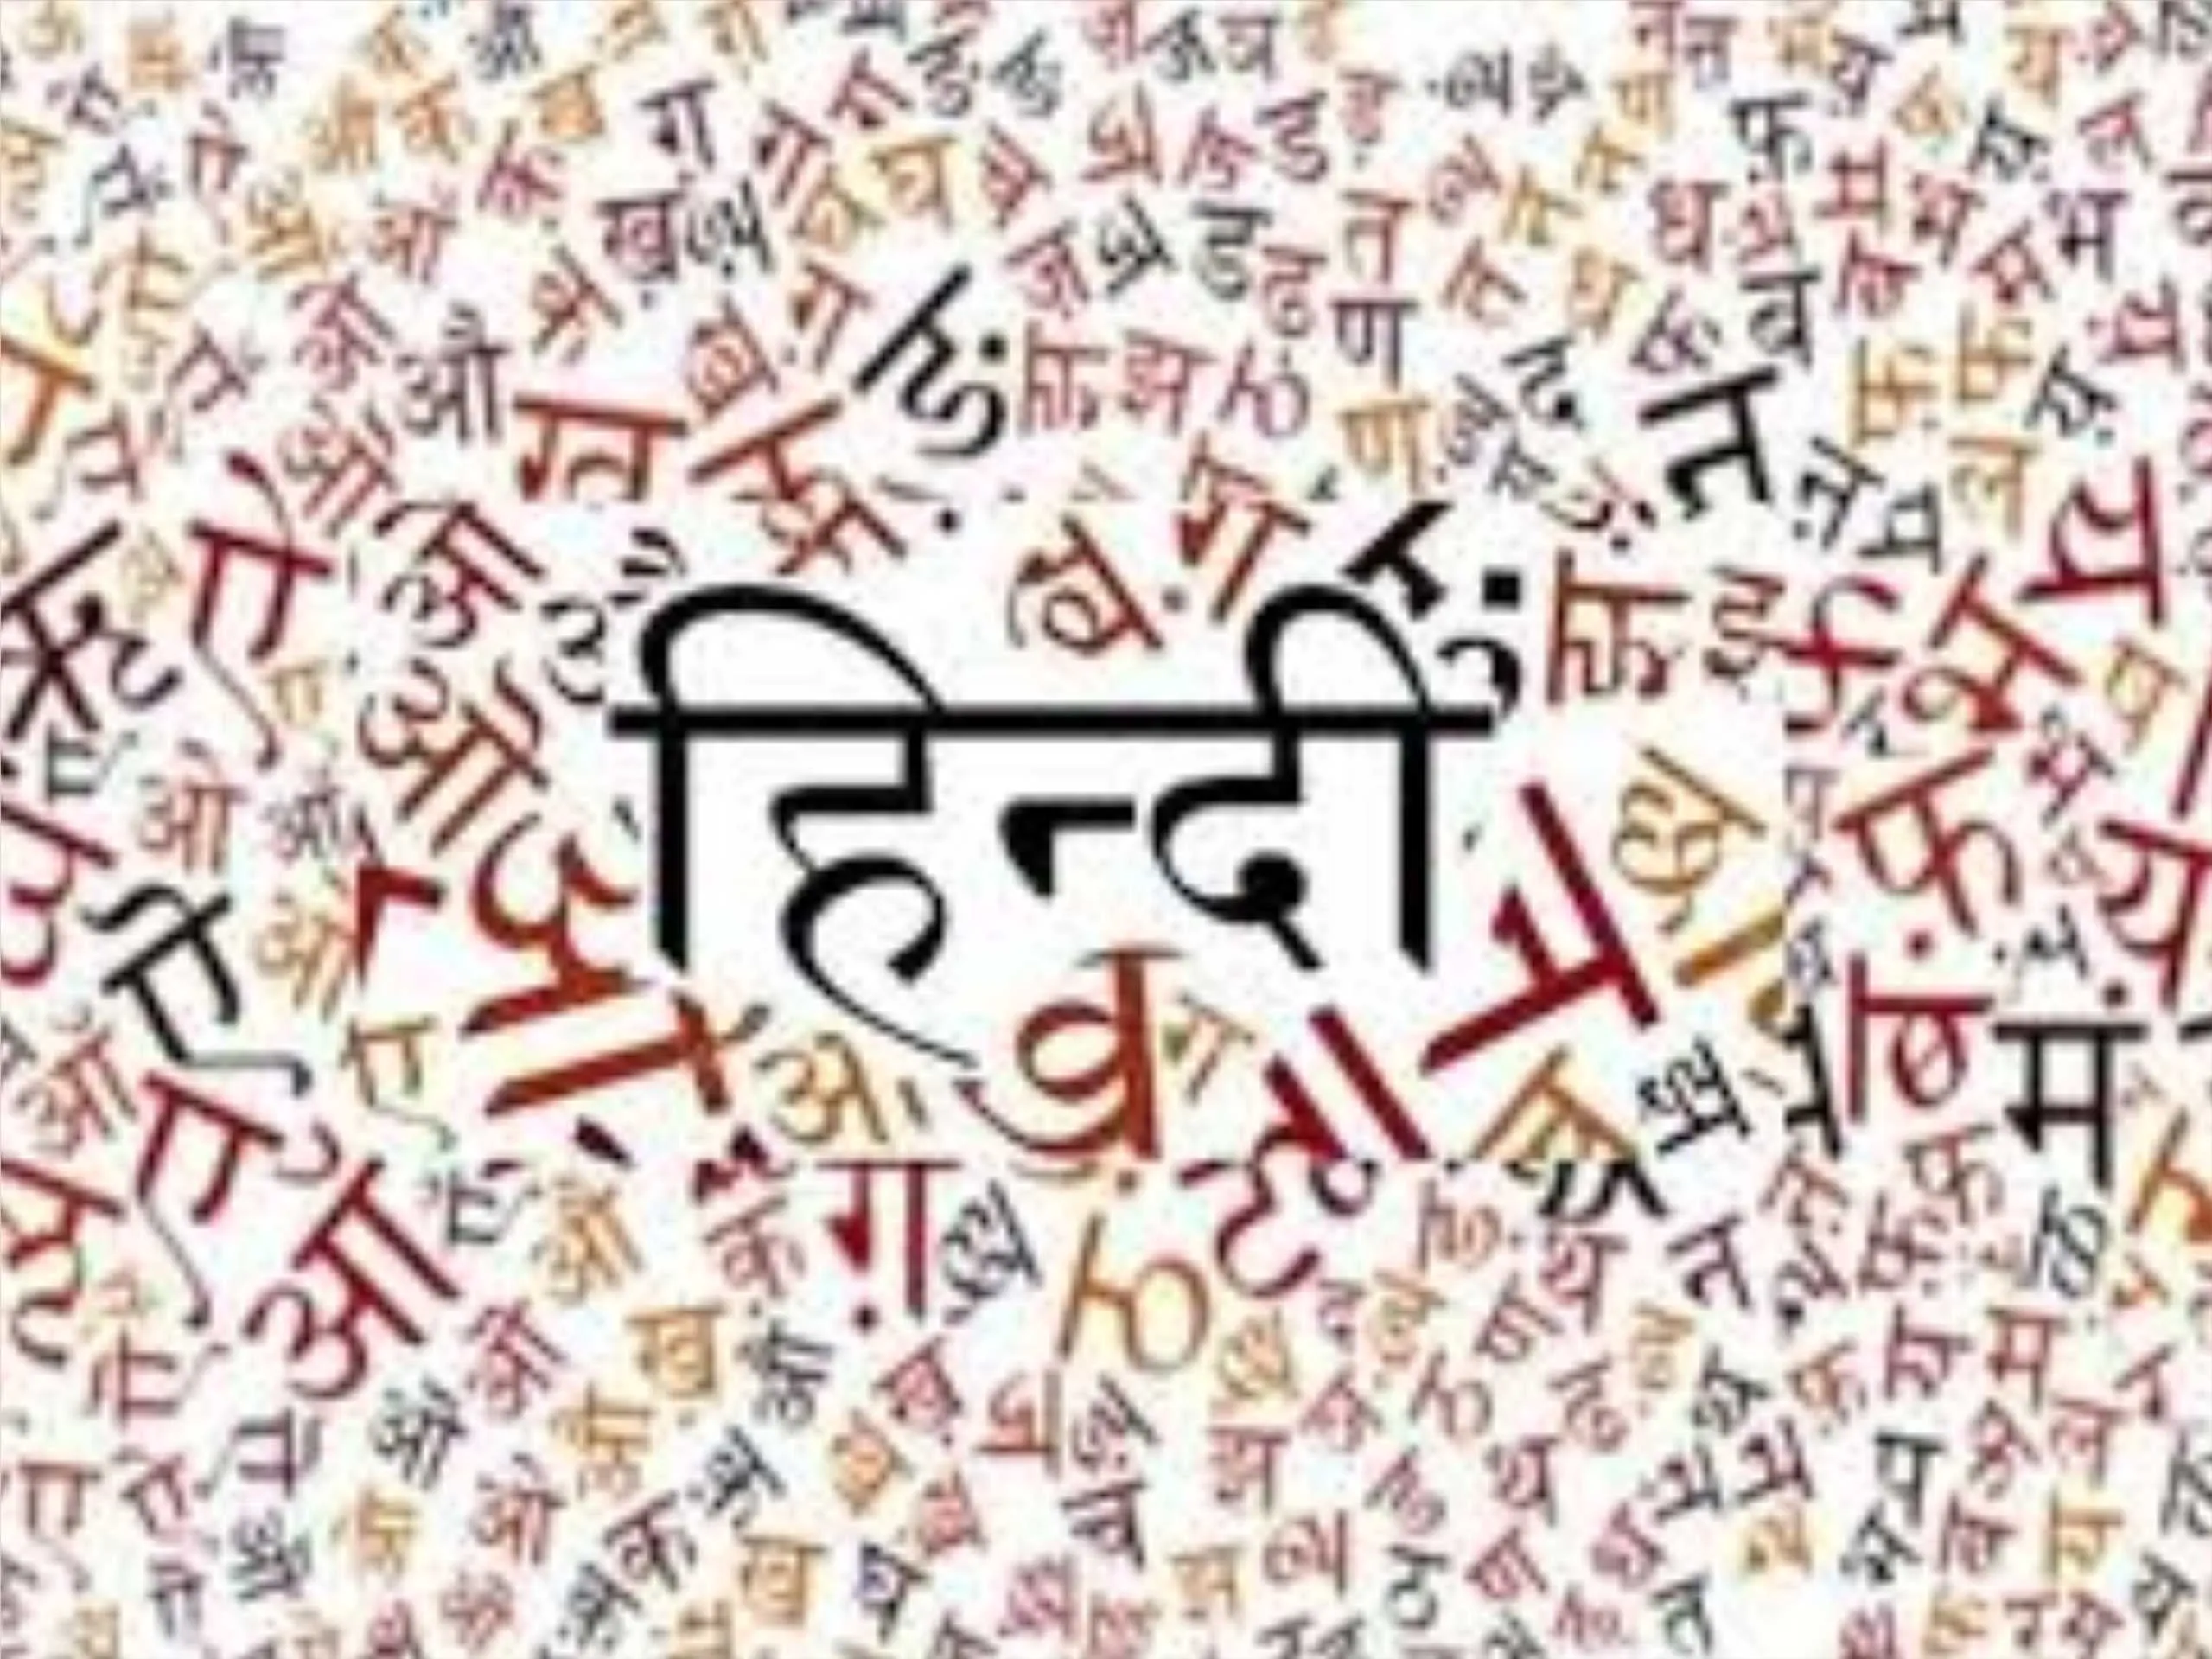 History of hindi